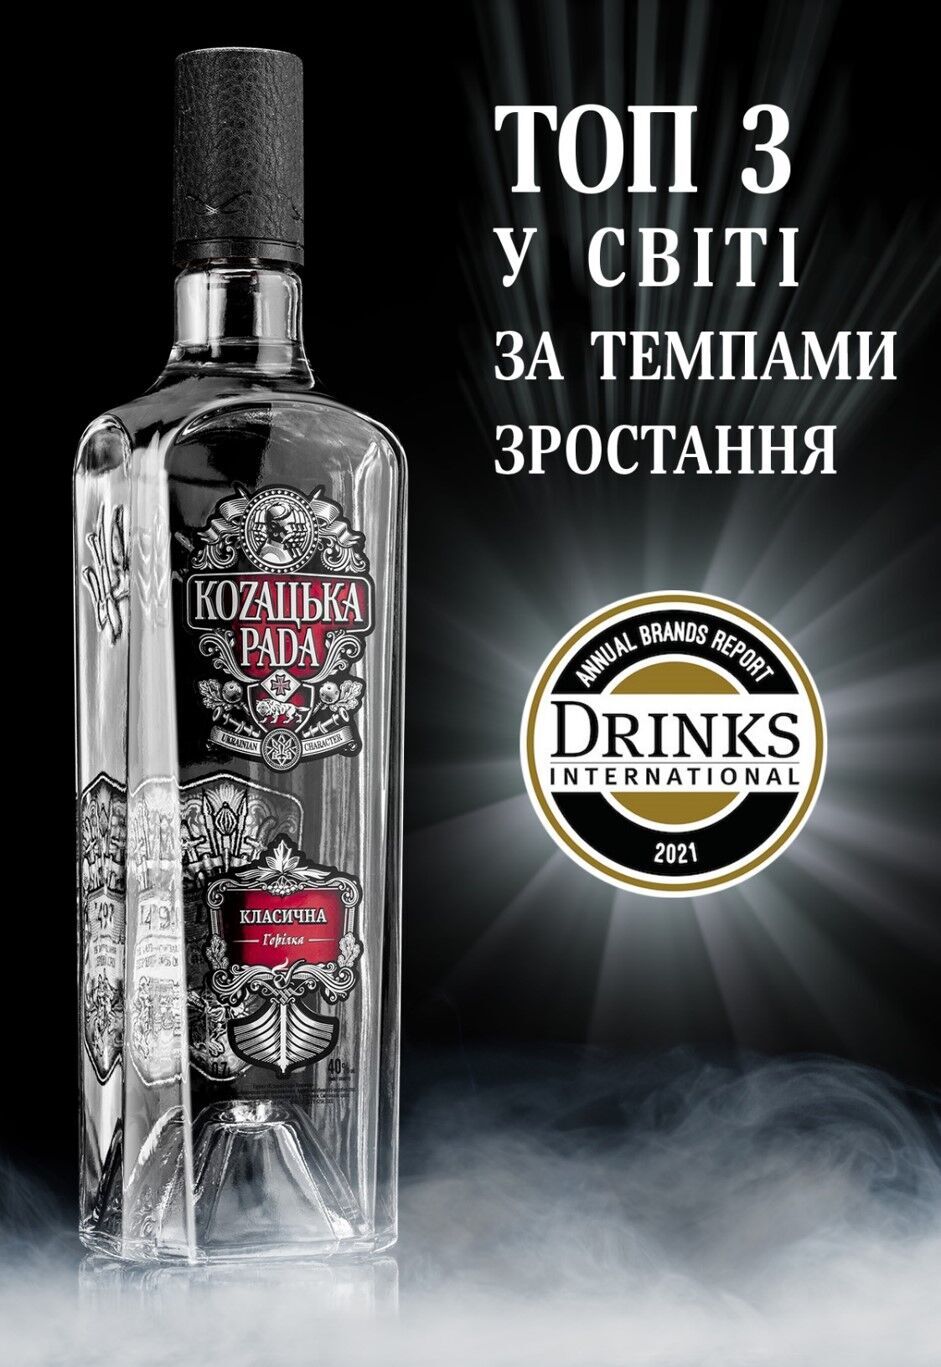 KOZAЦЬКА PADA в рейтинге издания Drinks International.